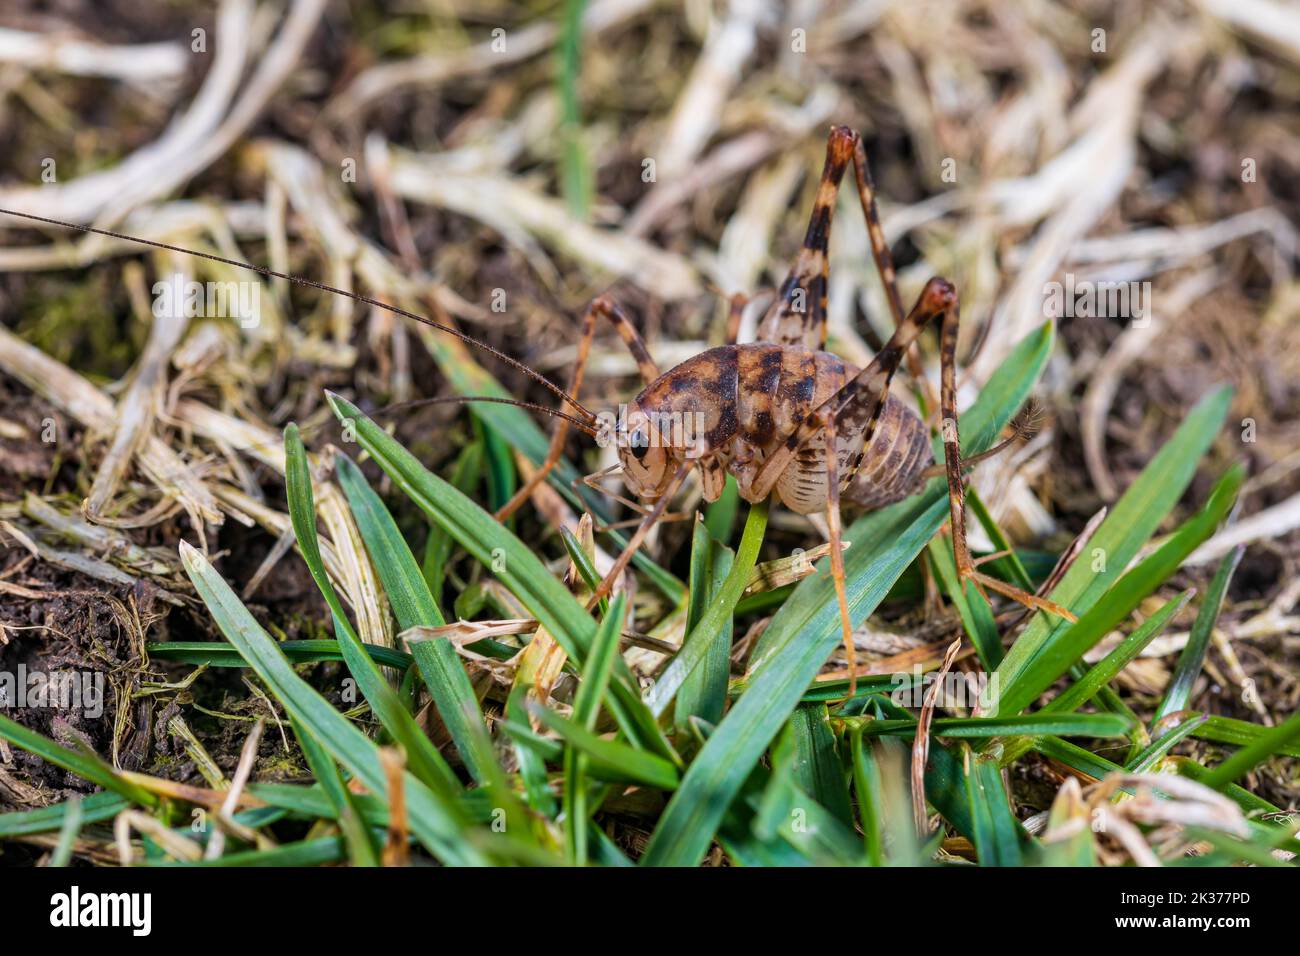 Nahaufnahme von Kamel Cricket im Gras. Schädlingsbekämpfung, Insekten und Naturschutz Konzept. Stockfoto